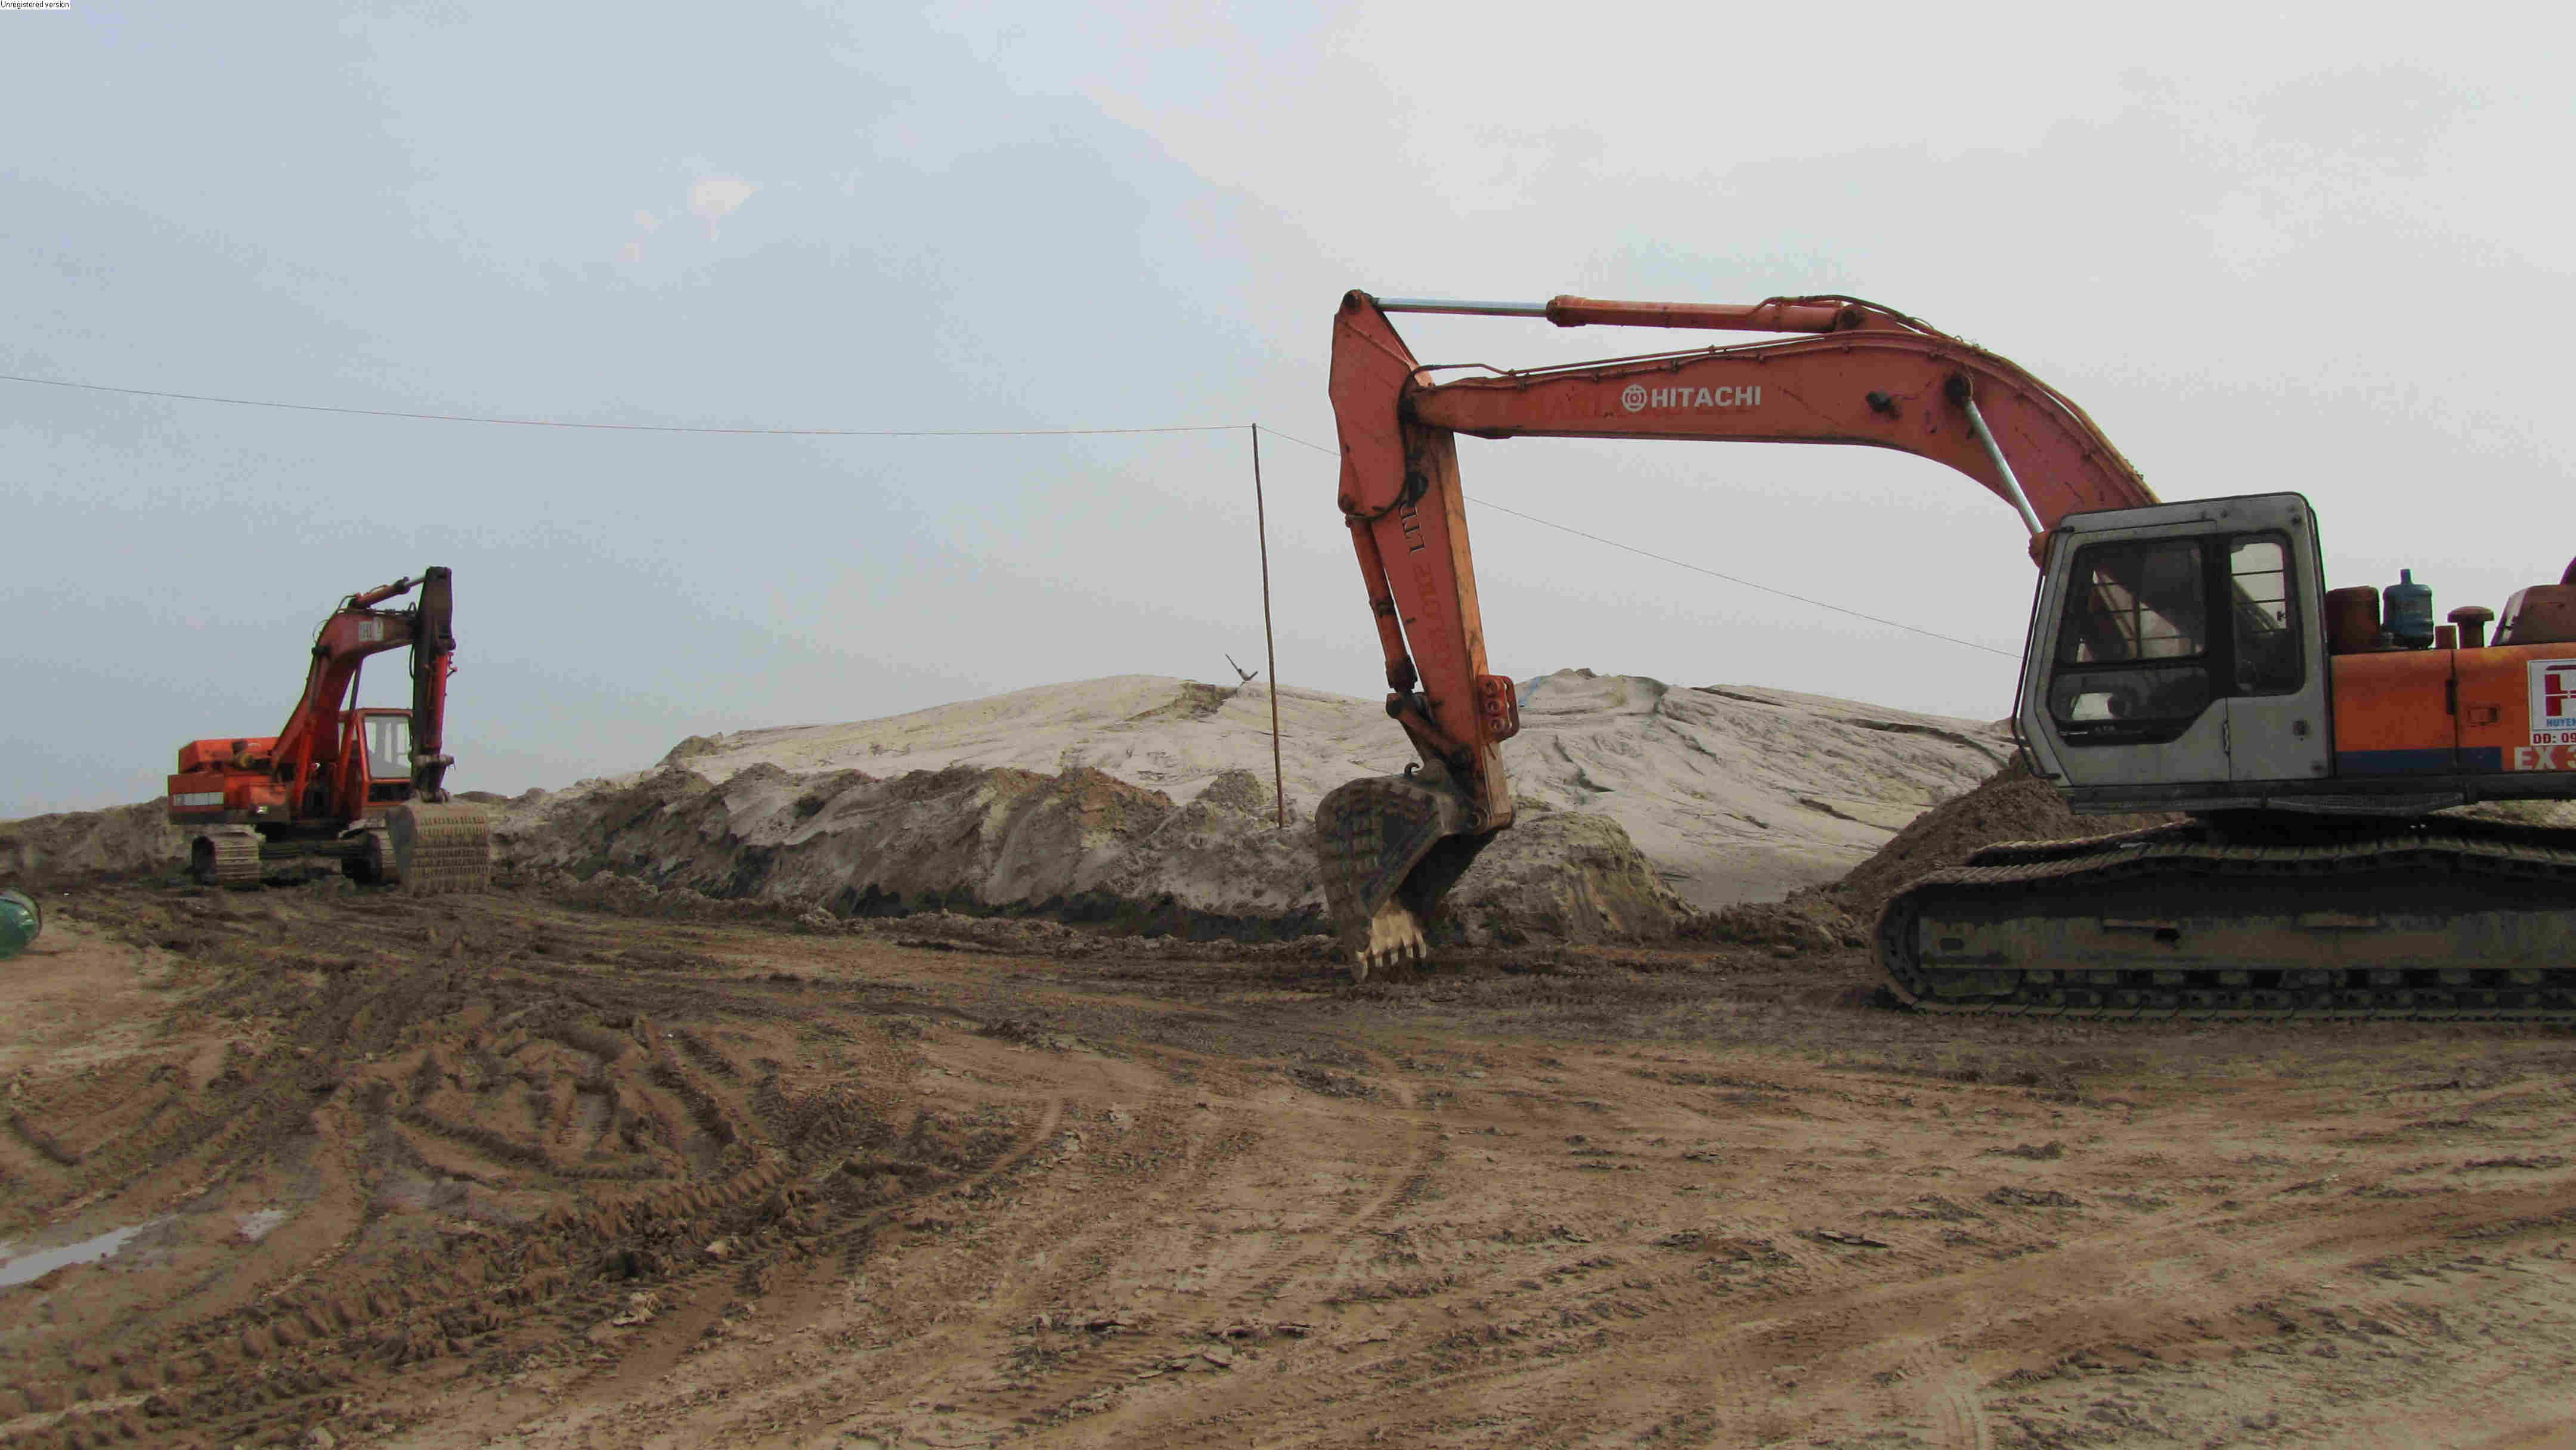 Hưng Yên: Danh sách các khu vực được cấp phép khai thác khoáng sản